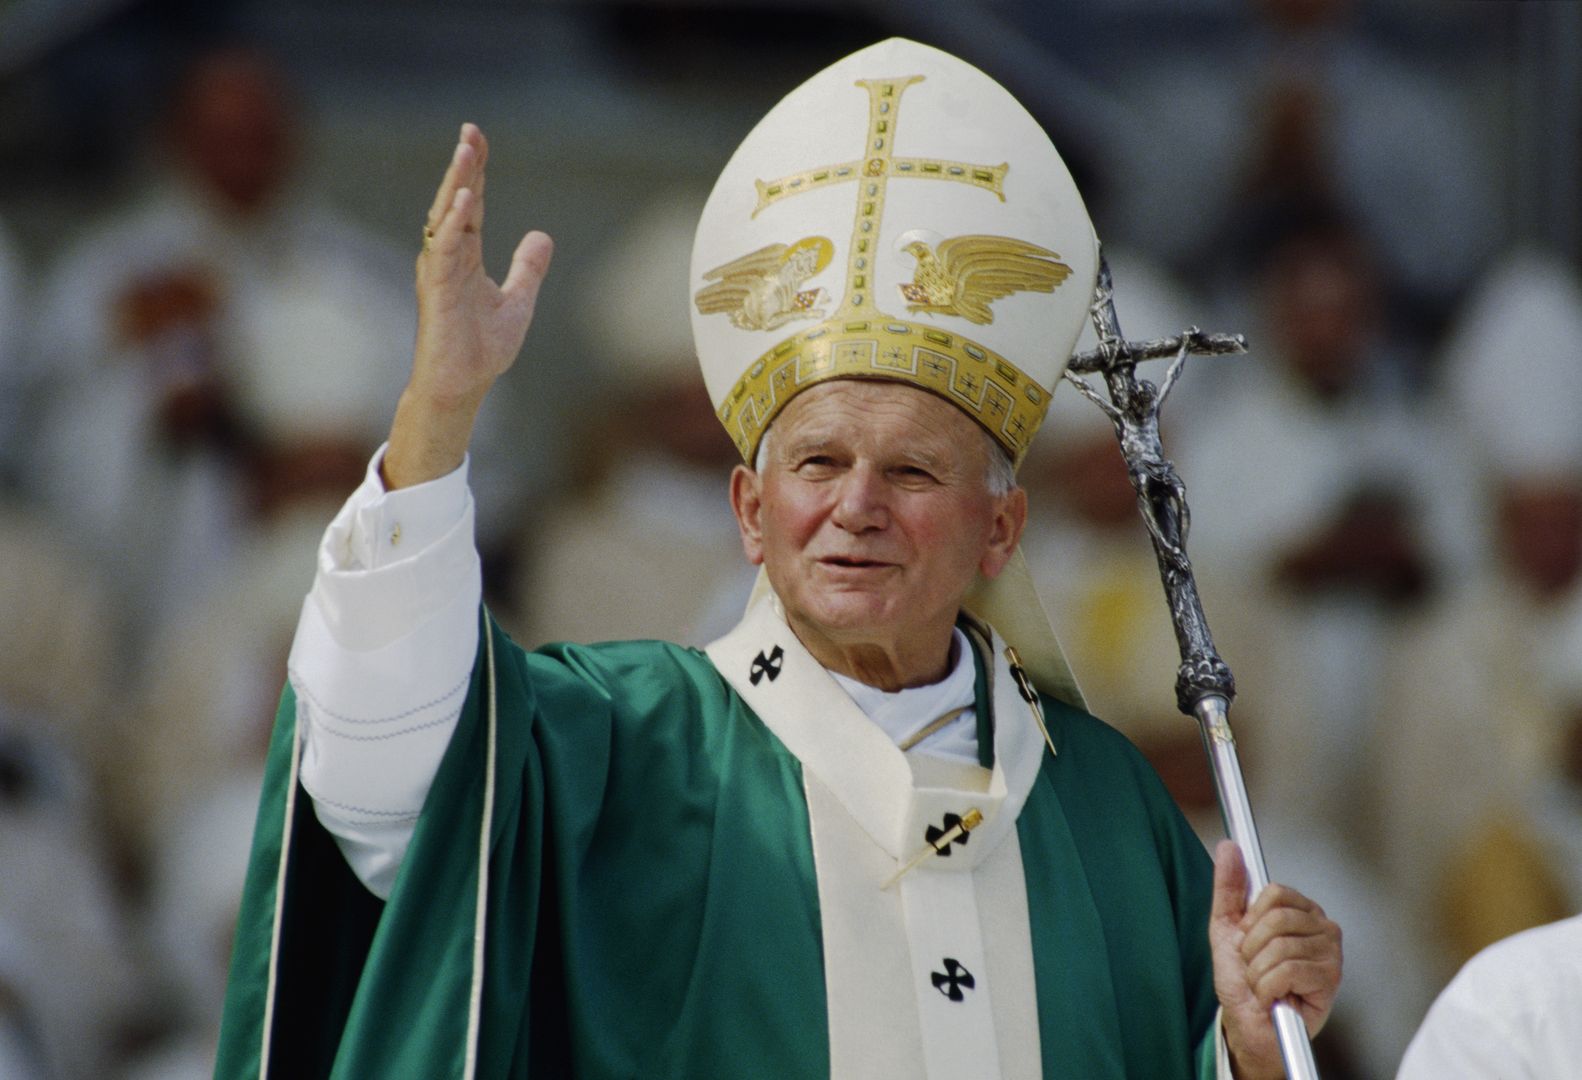 Pomnik Jana Pawła II online. Będzie go można oglądać w internecie całą dobę